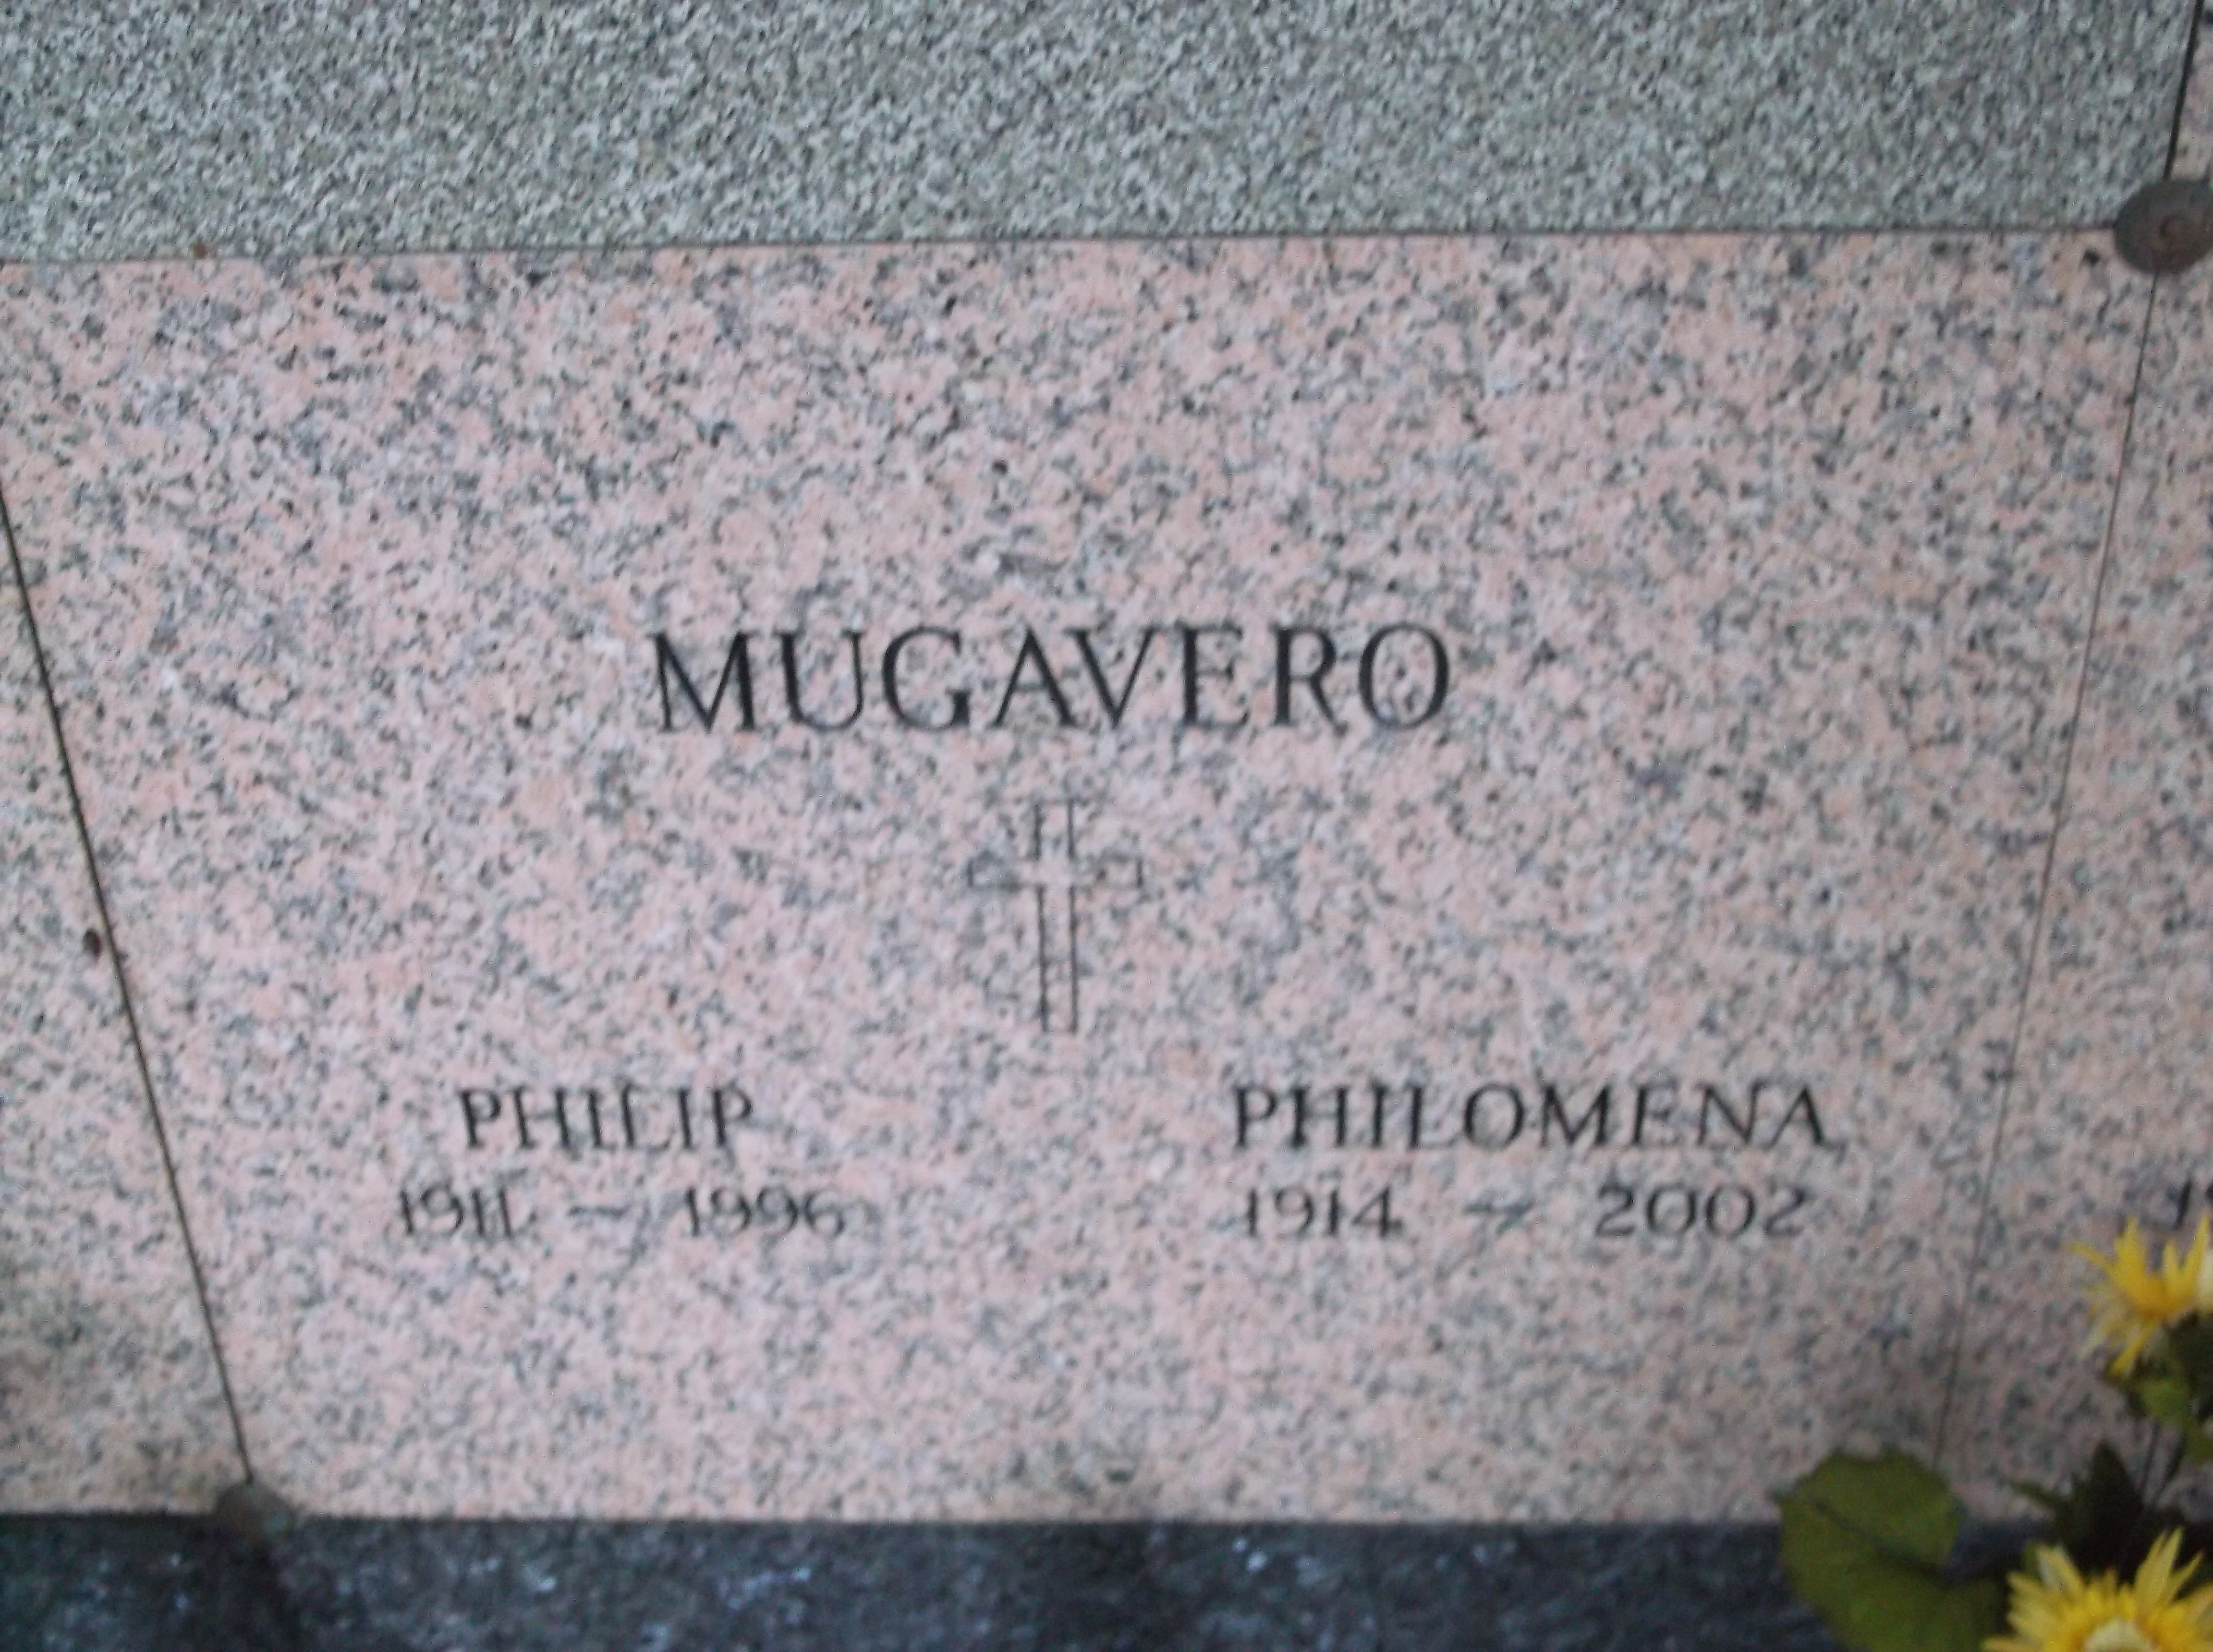 Philip Mugavero